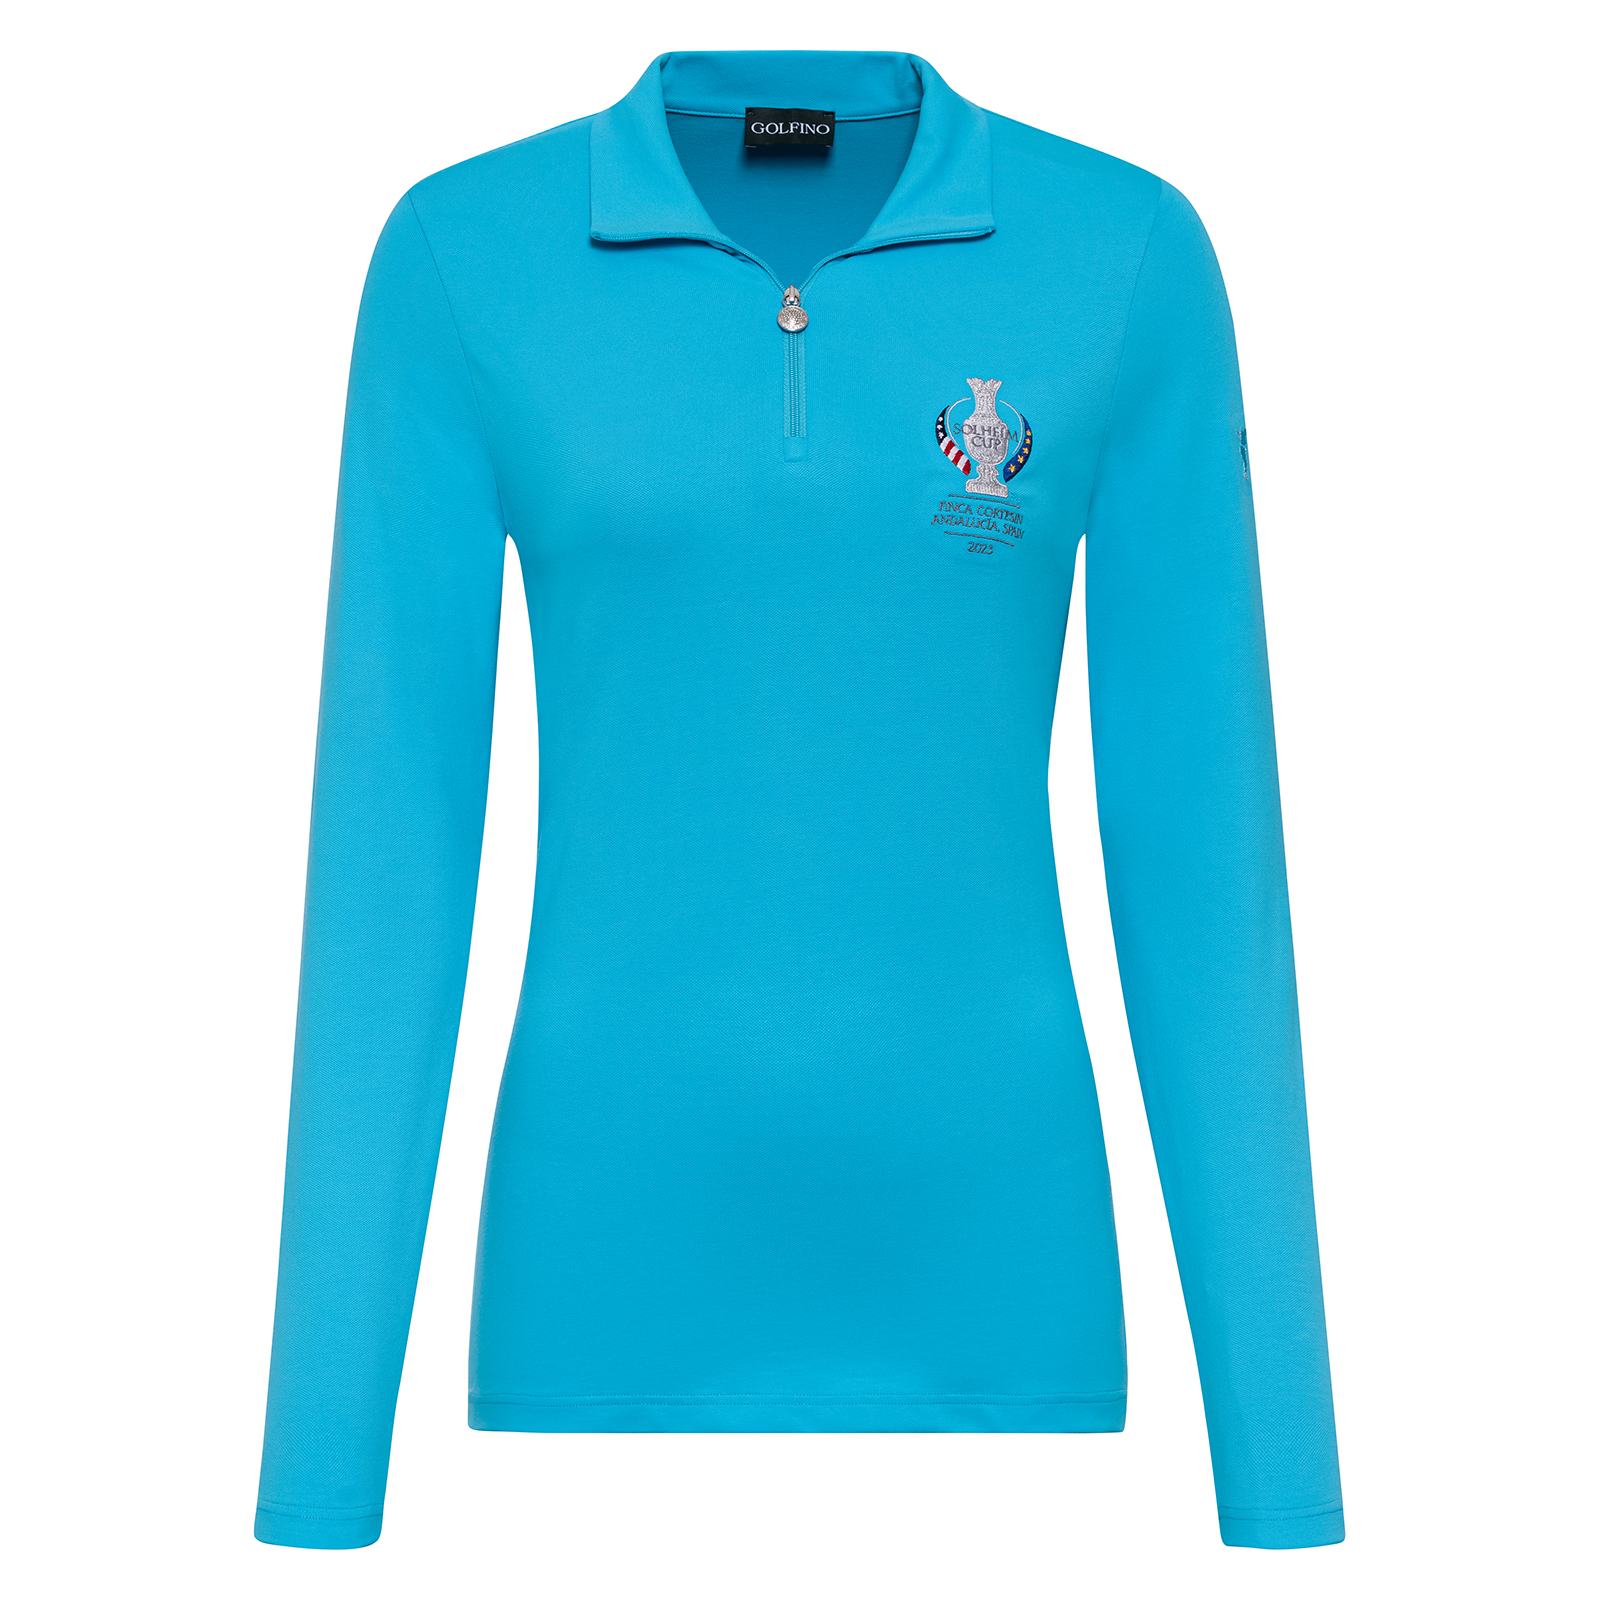 Damen Golf Troyer mit UV-Schutz im Solheim Cup Design